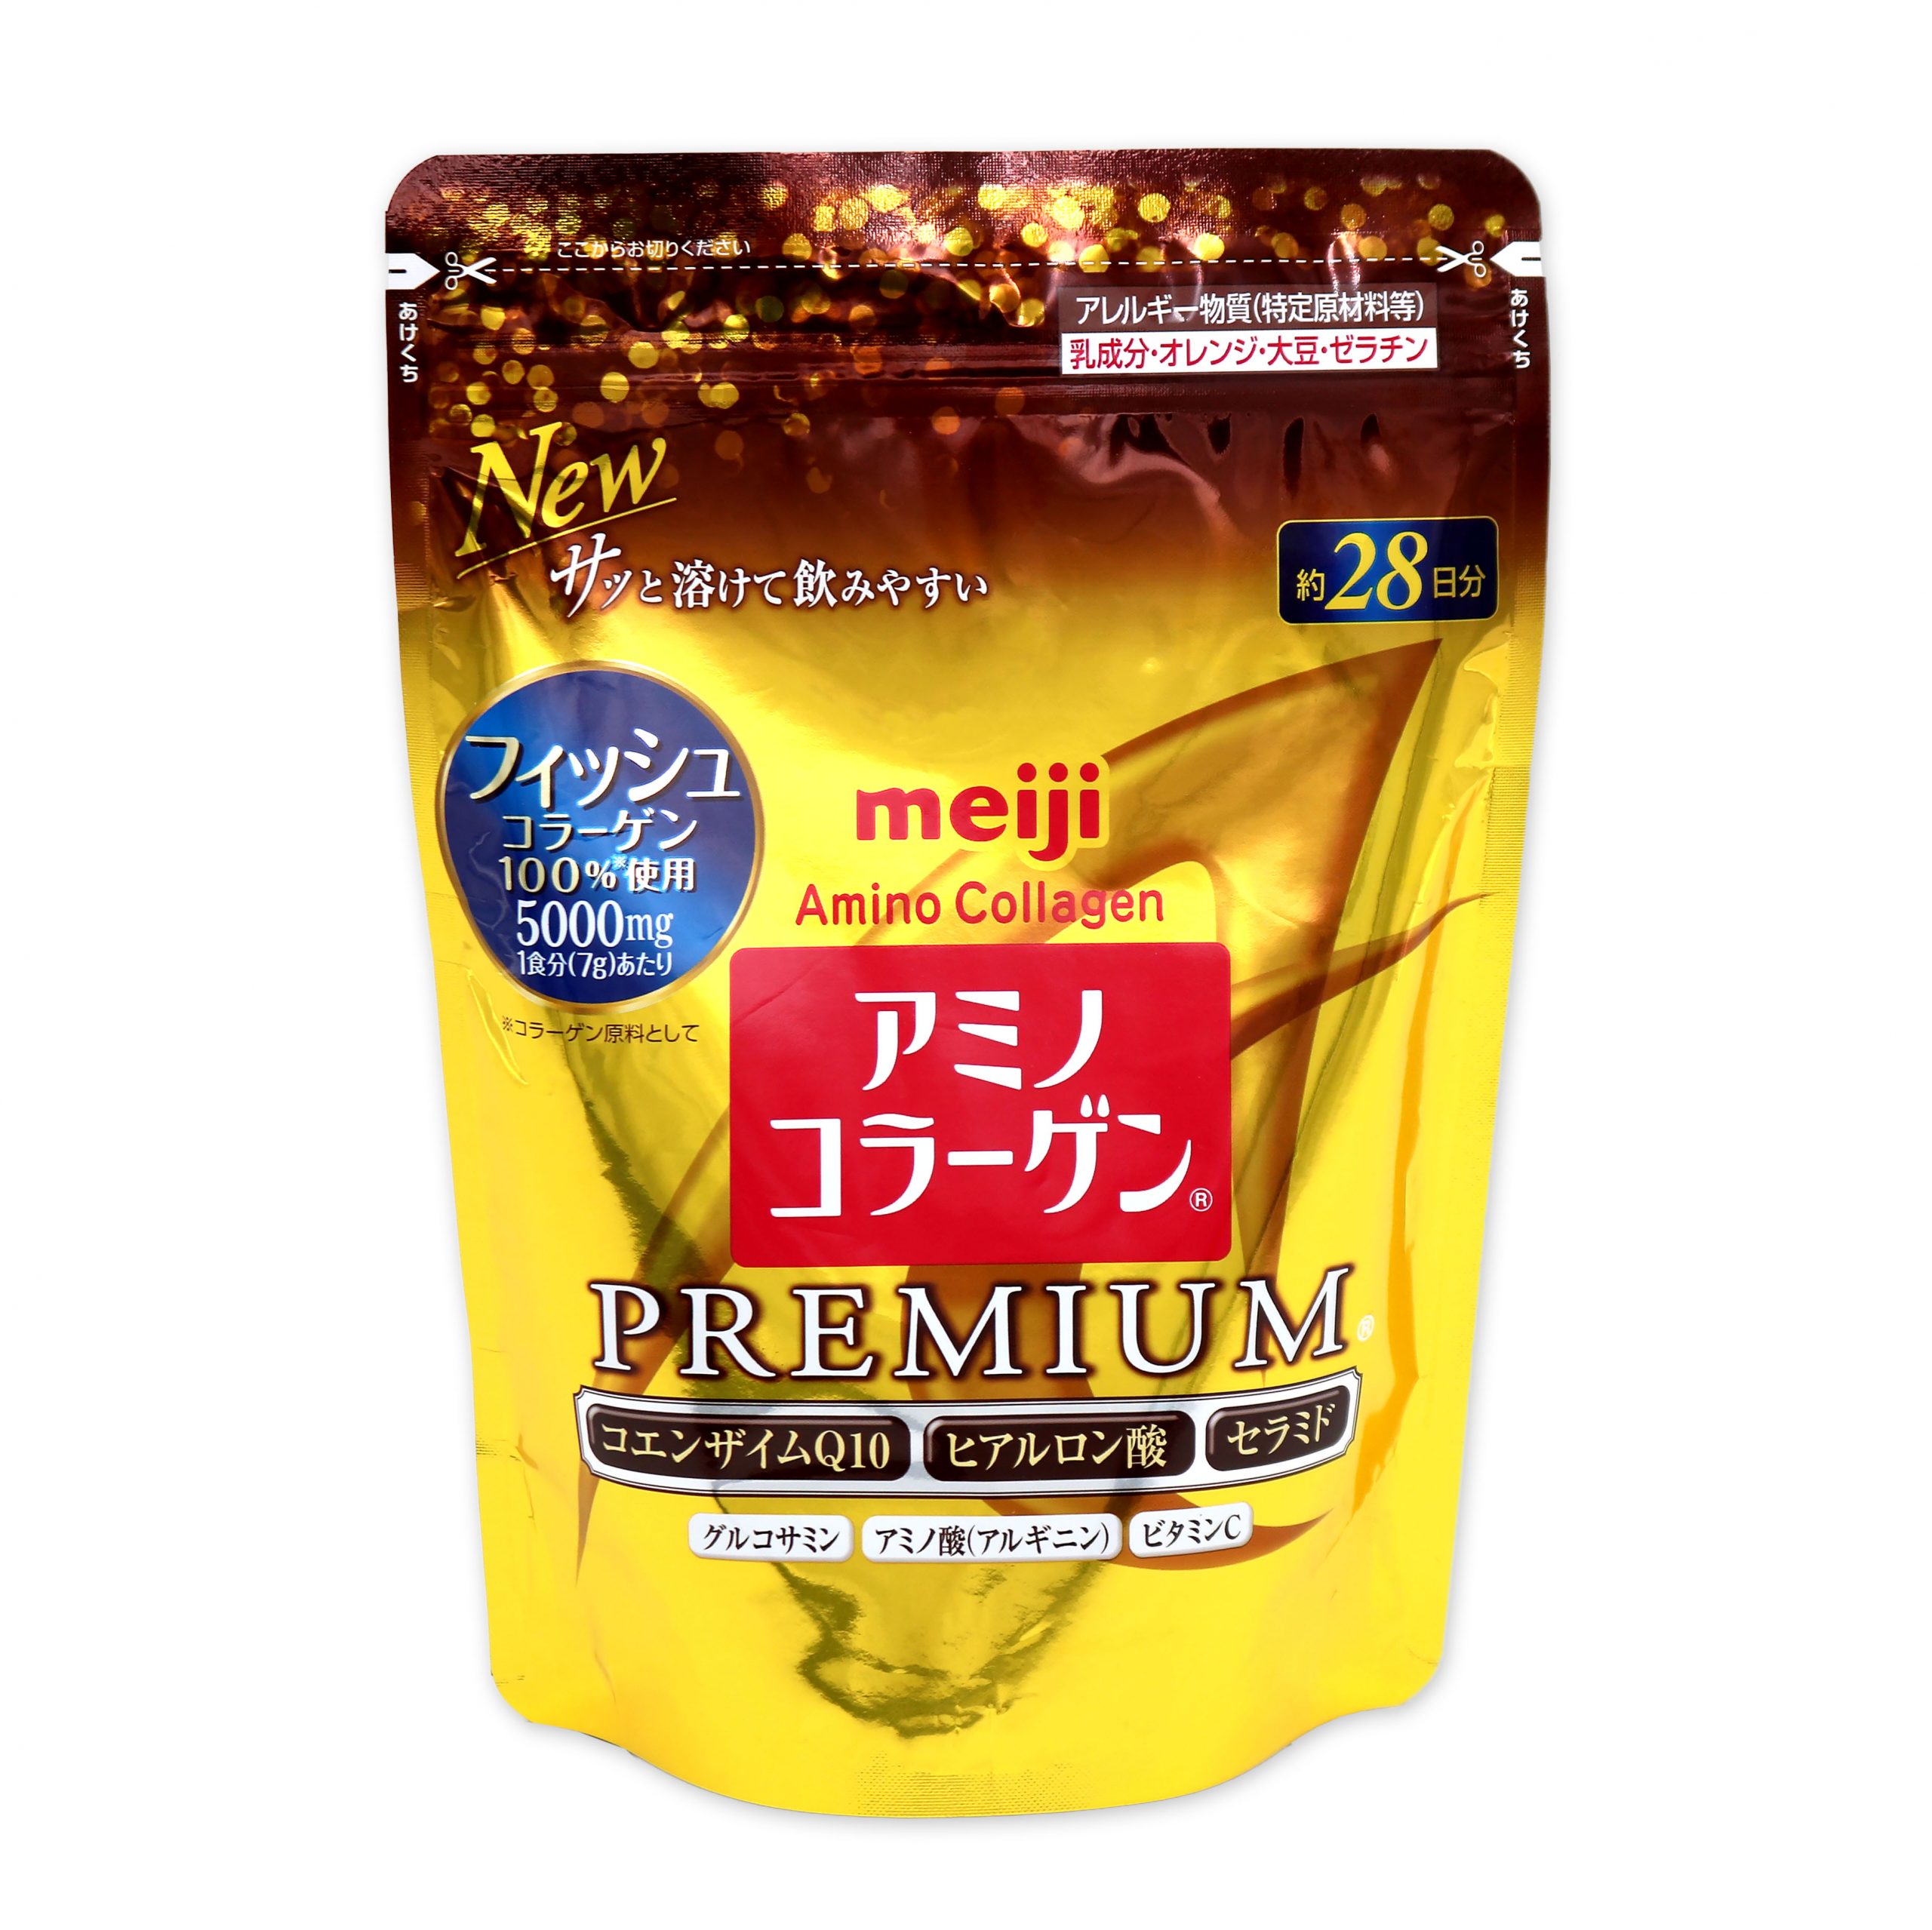 Коллаген Amino Collagen Premium Meiji